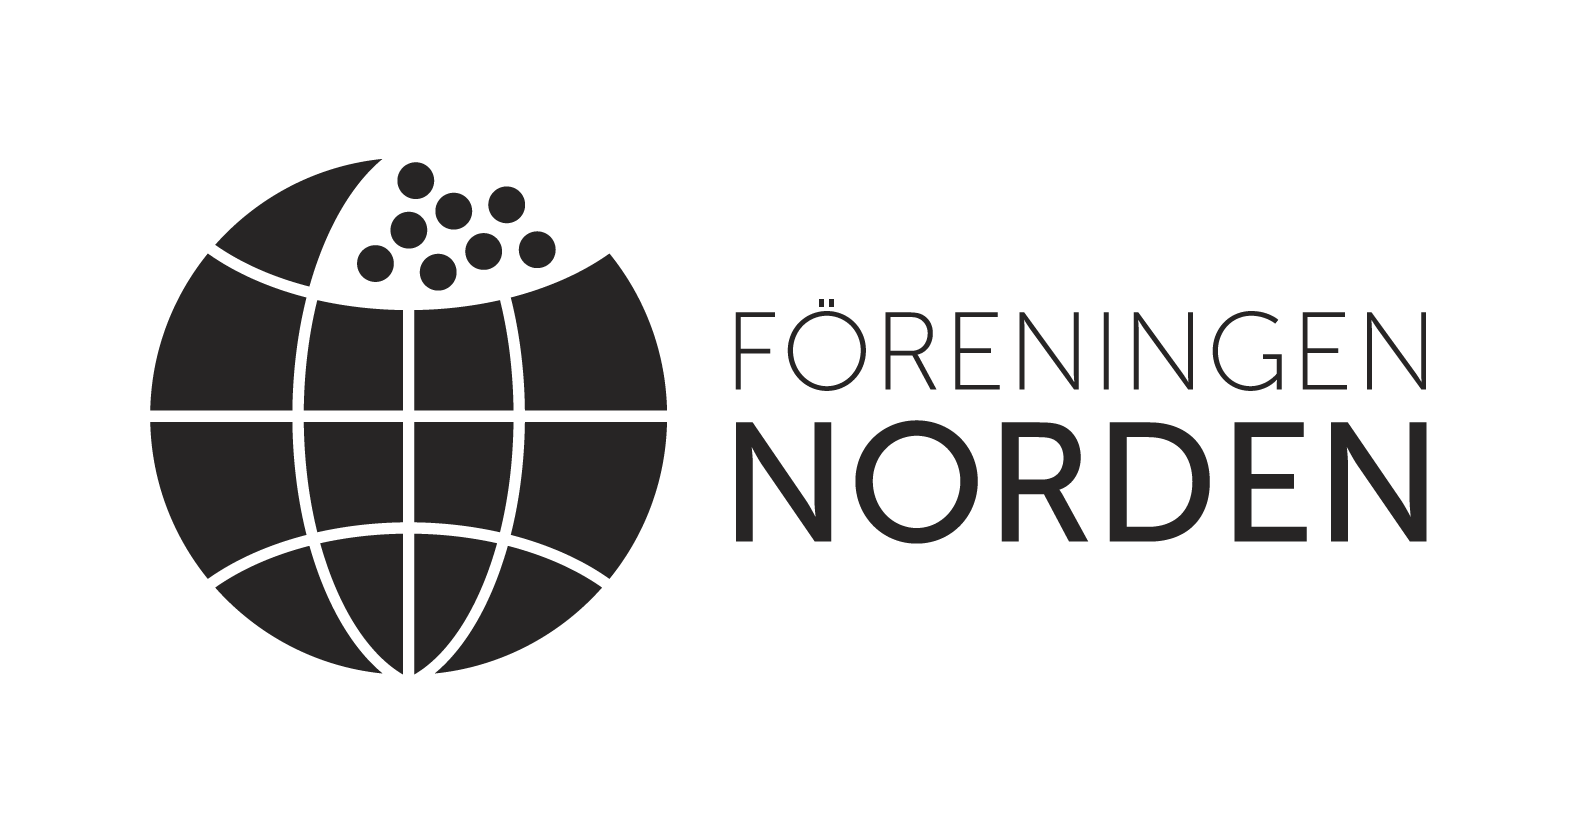 Verksamhetsutvecklare för samhörighet och samarbete i Norden!